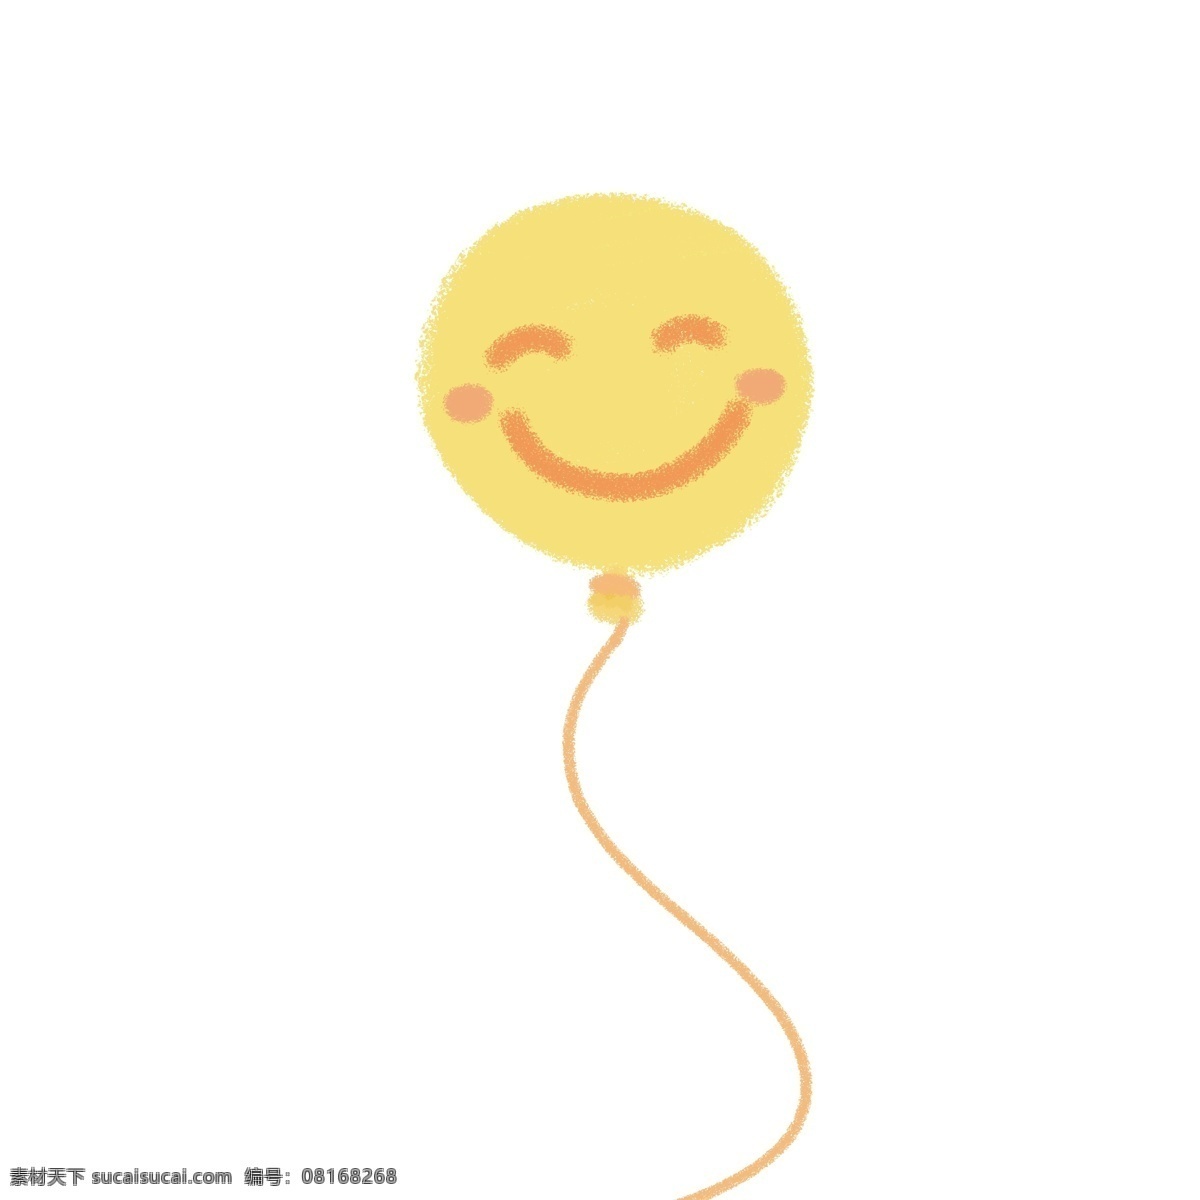 黄色 表情 包 花纹 气球 表情包 可爱 简单